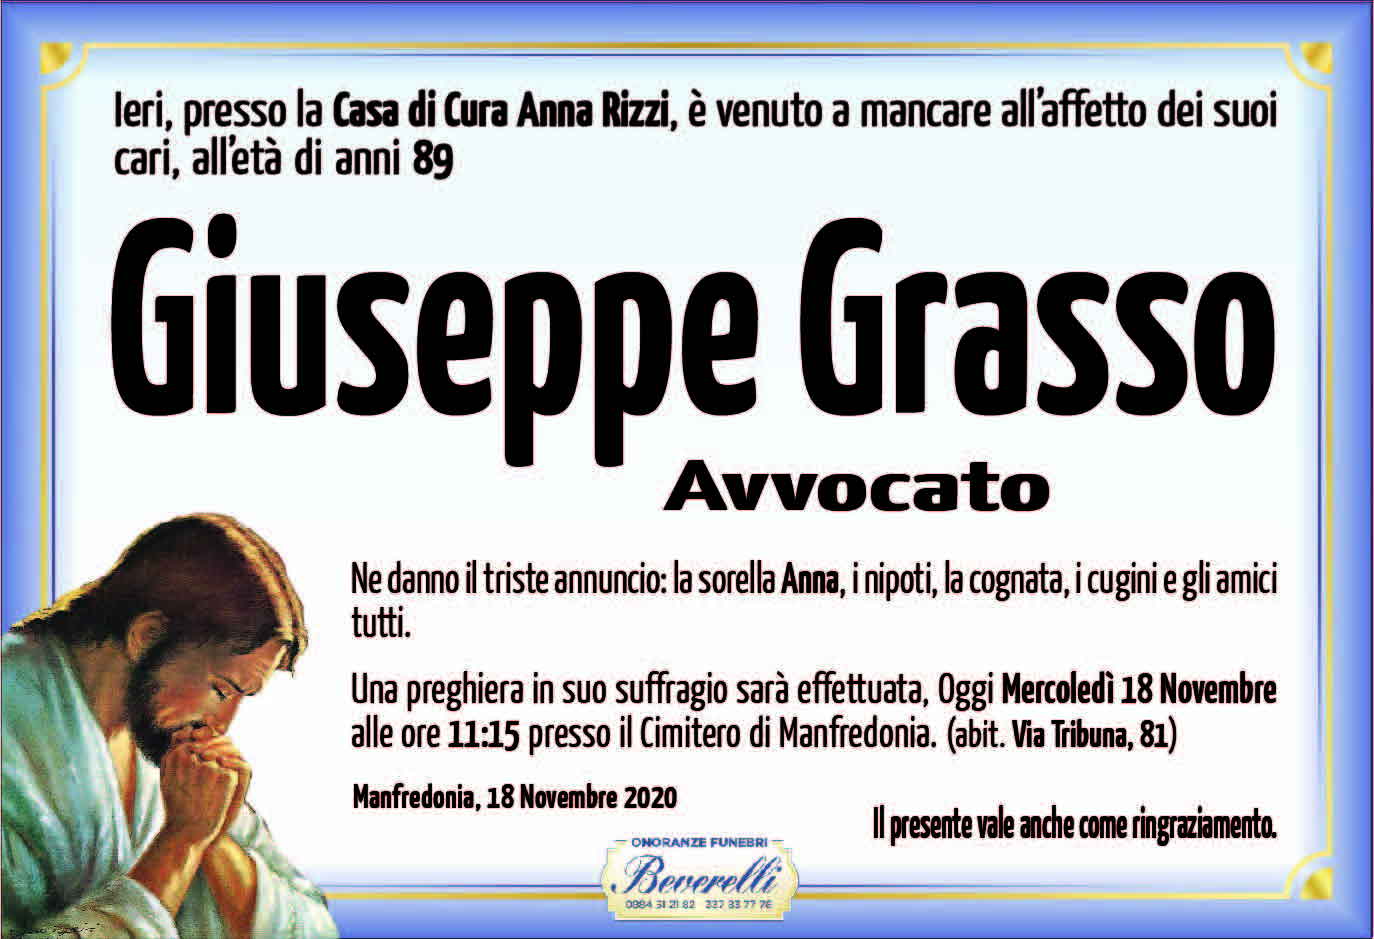 Giuseppe Grasso